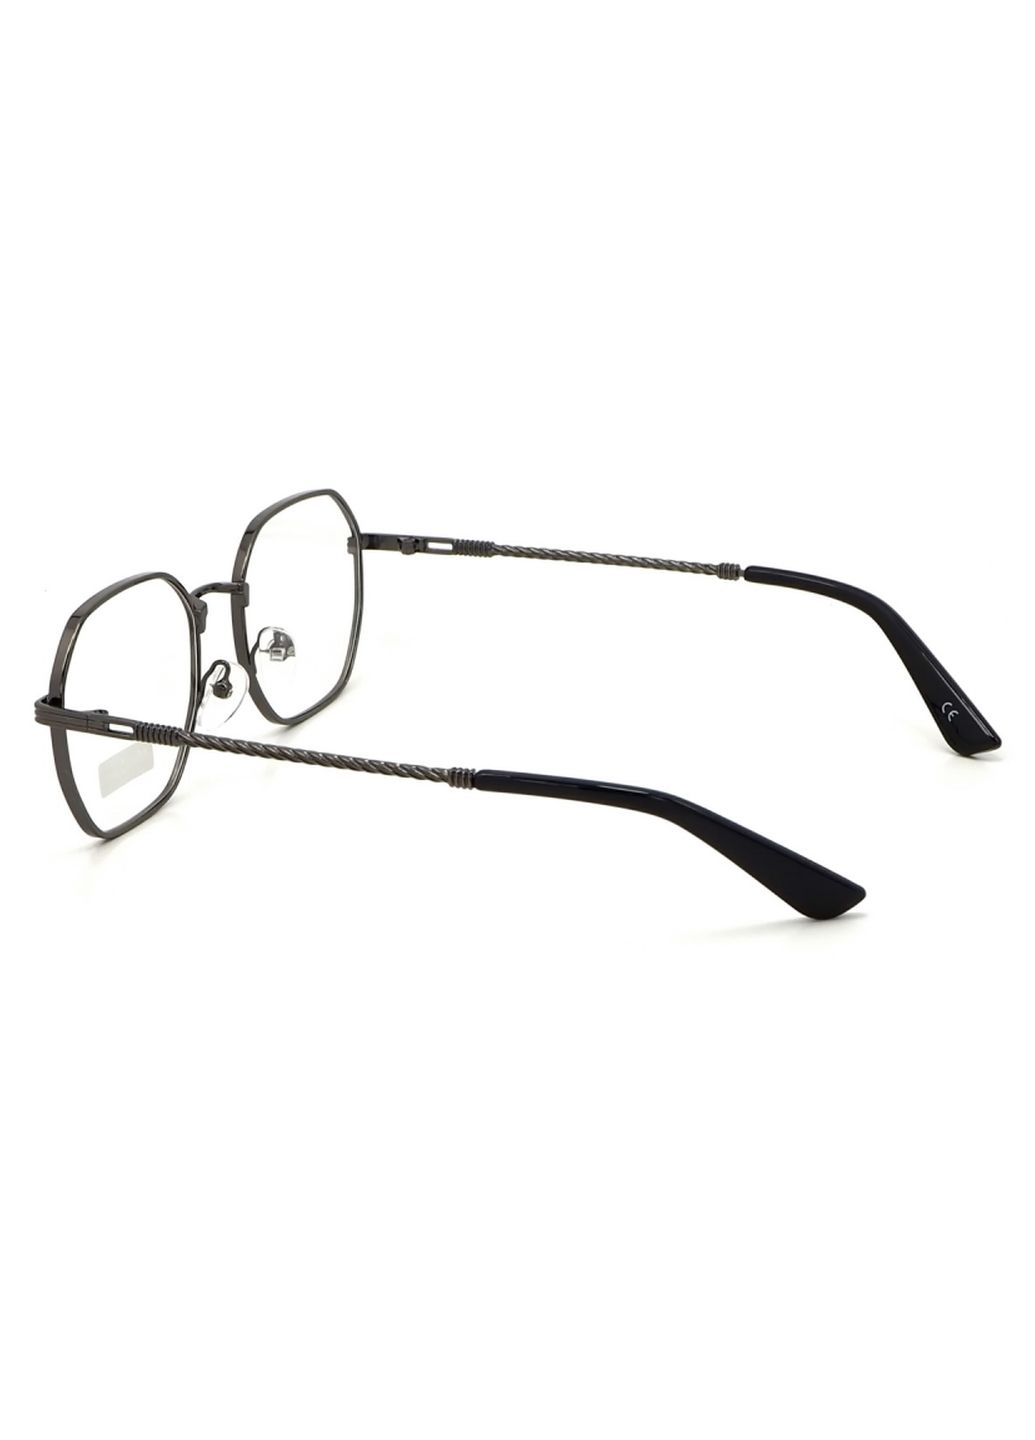 Купити Окуляри для роботи за комп'ютером Cooper Glasses у сірій оправі 124010 в інтернет-магазині